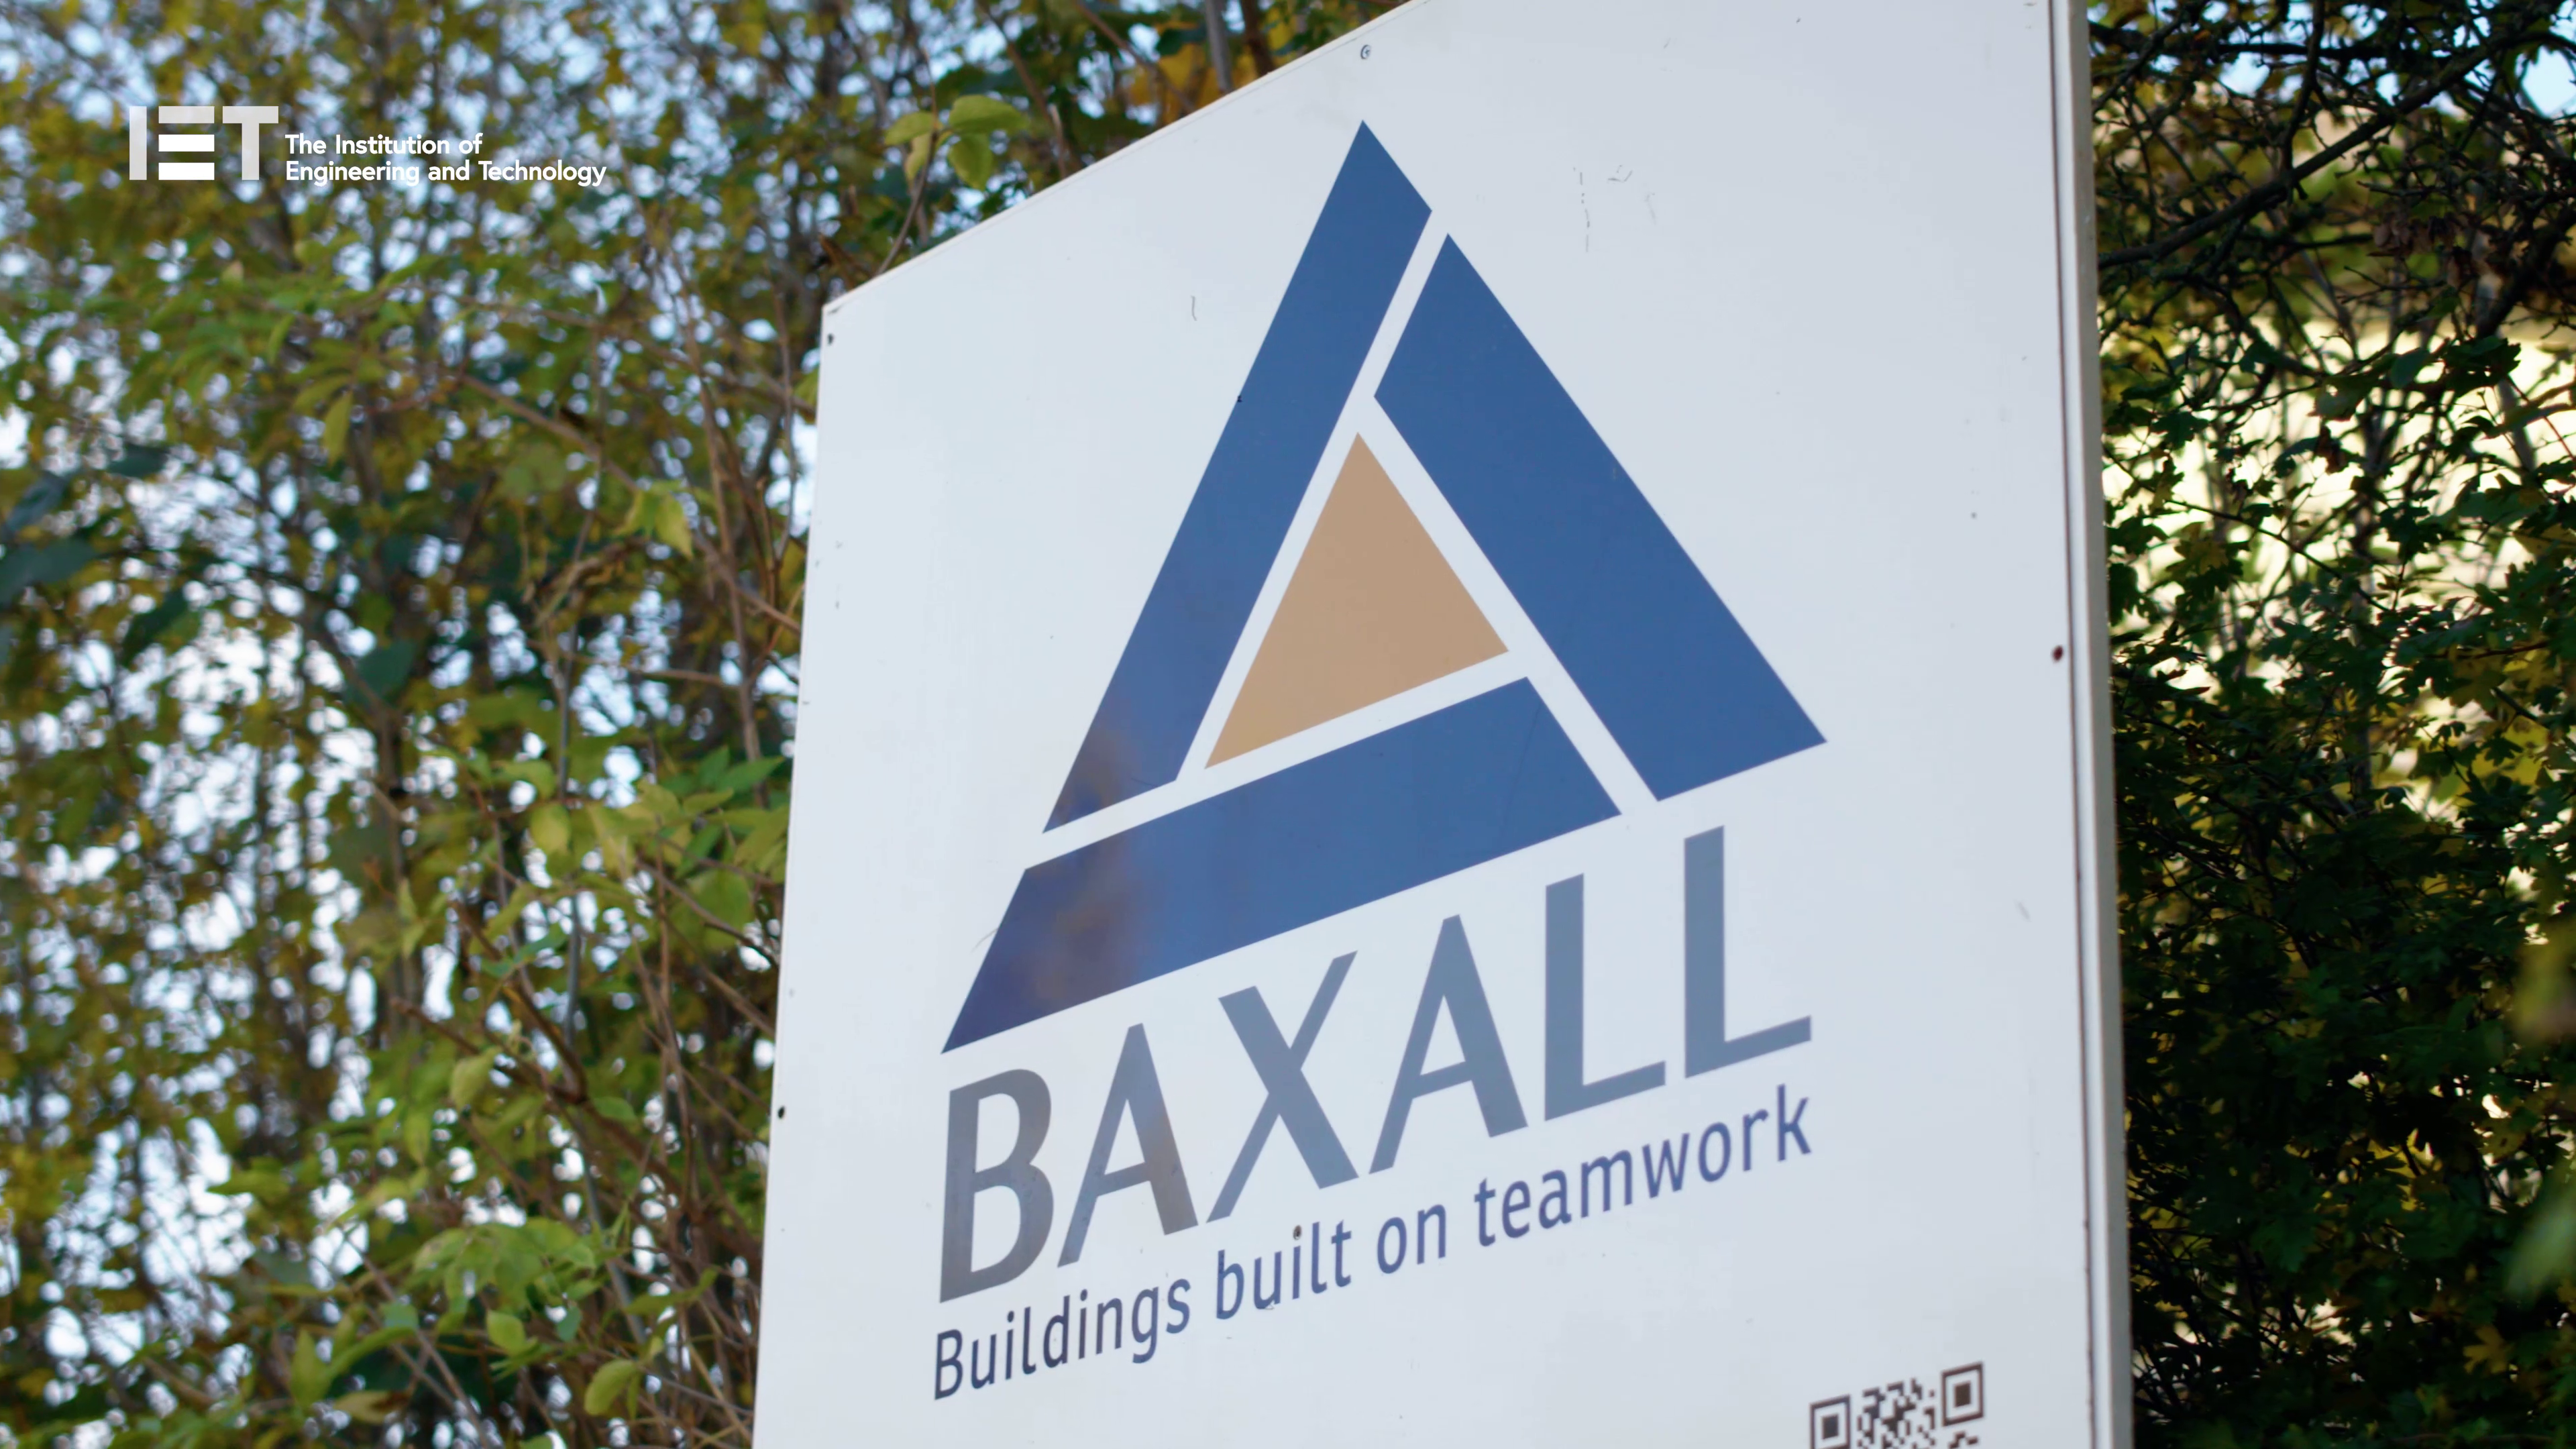 Baxall Construction Buildings Built On Teamwork